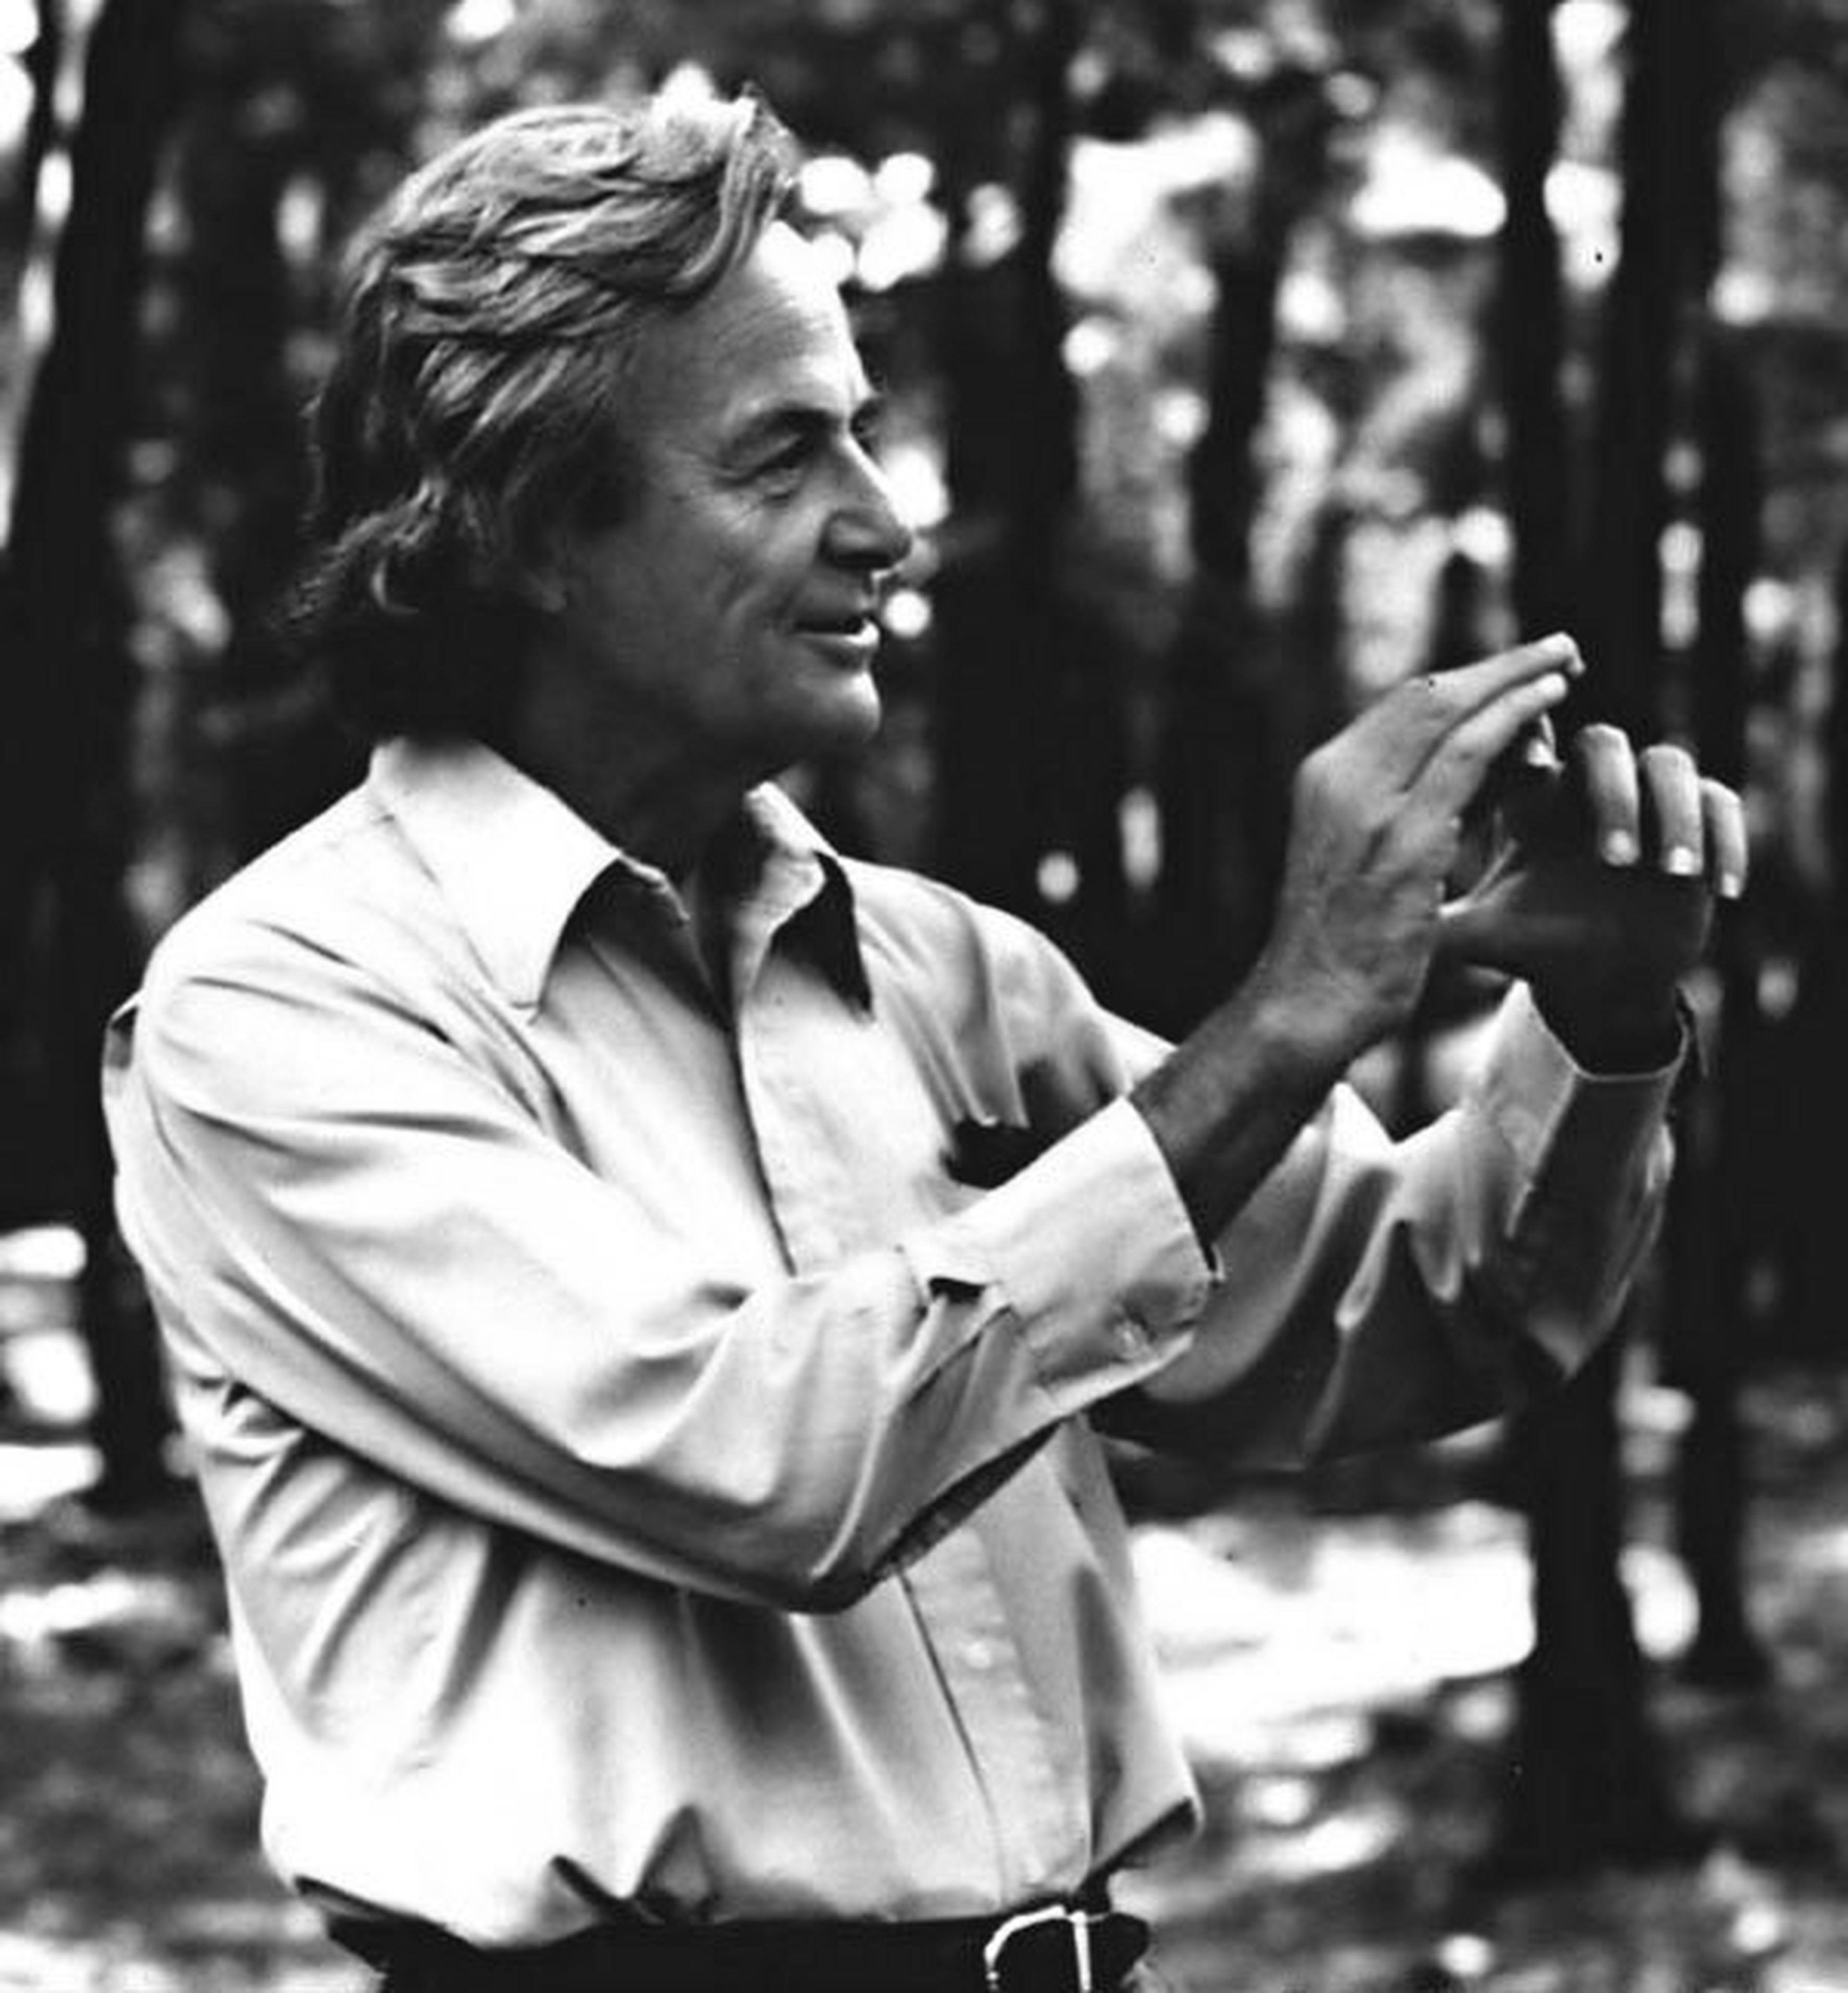 Richard feynman